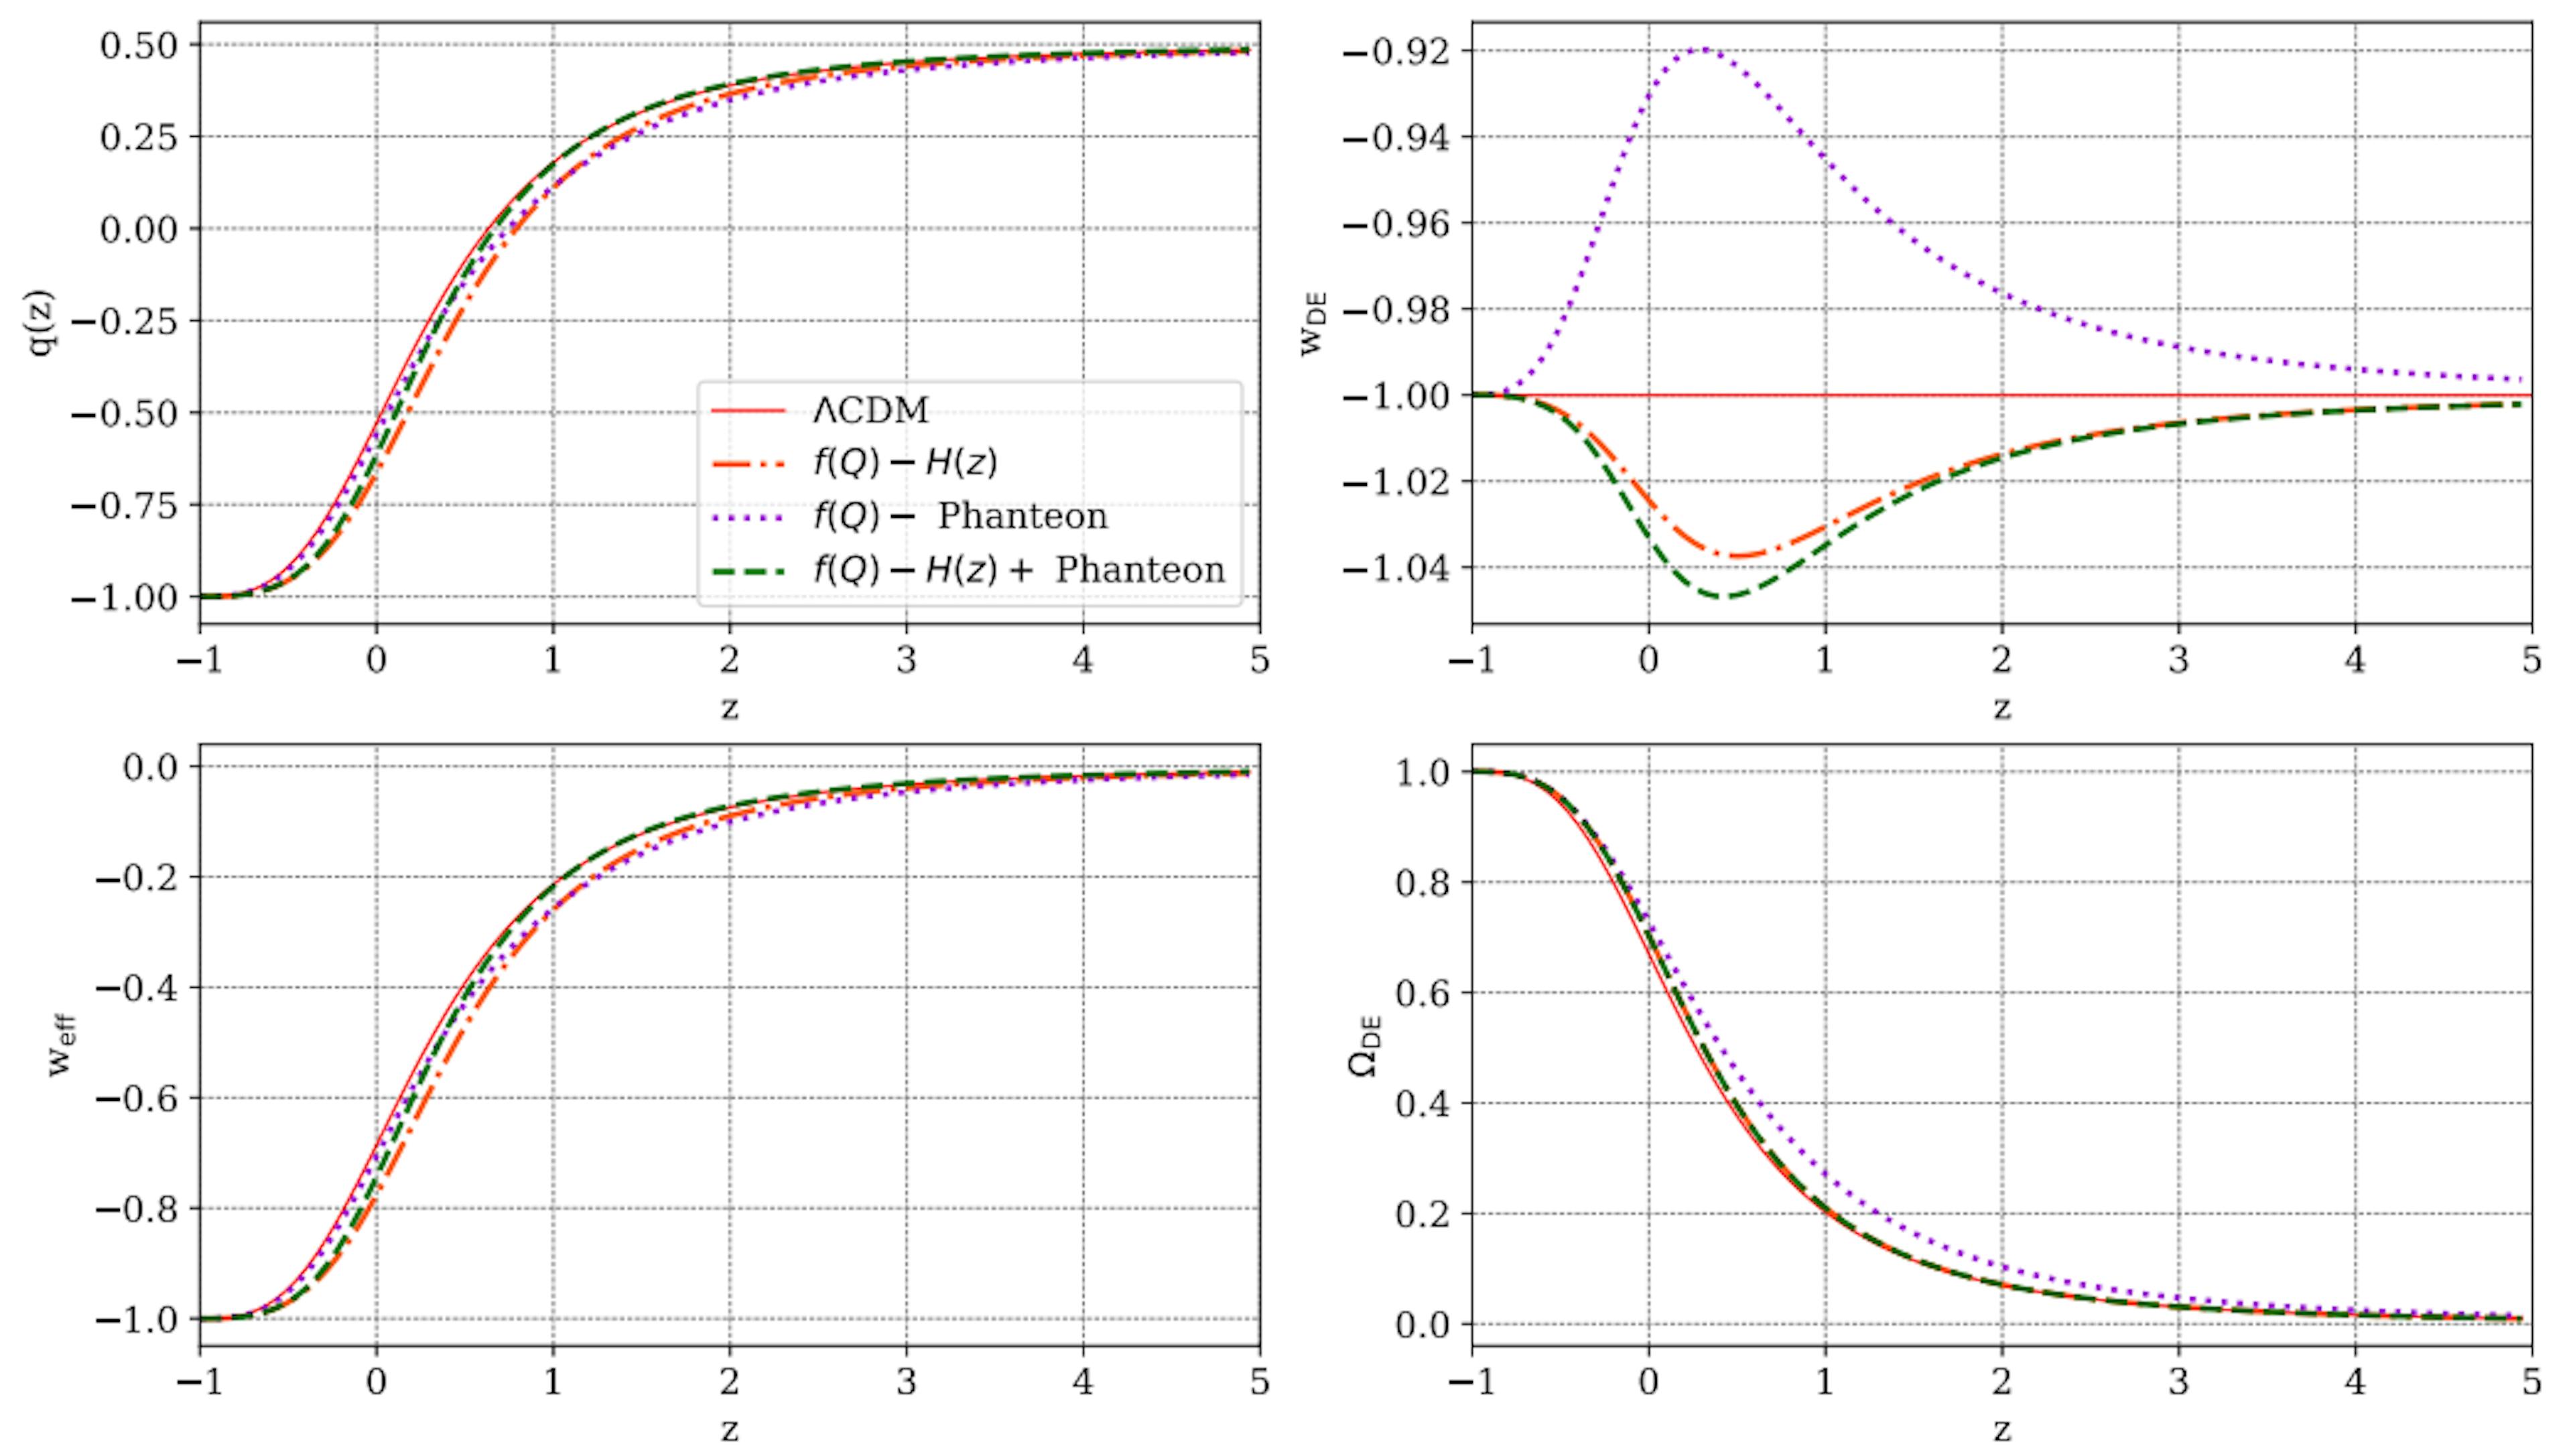 Şekil 7: Bu çalışmada sunulan f(Q) modeli için tahmin edildiği gibi bazı kozmolojik parametrelerin kırmızıya kayma, z'ye karşı evrimi, ΛCDM tahminleriyle (kırmızı-dolu çizgi) karşılaştırıldığında. Her panelde noktalı turuncu, noktalı mor ve kesikli yeşil çizgiler sırasıyla H(z), Pantheon ve H(z)+ Pantheon örneklerinden elde edilen parametre kısıtlamalarının sonucudur.